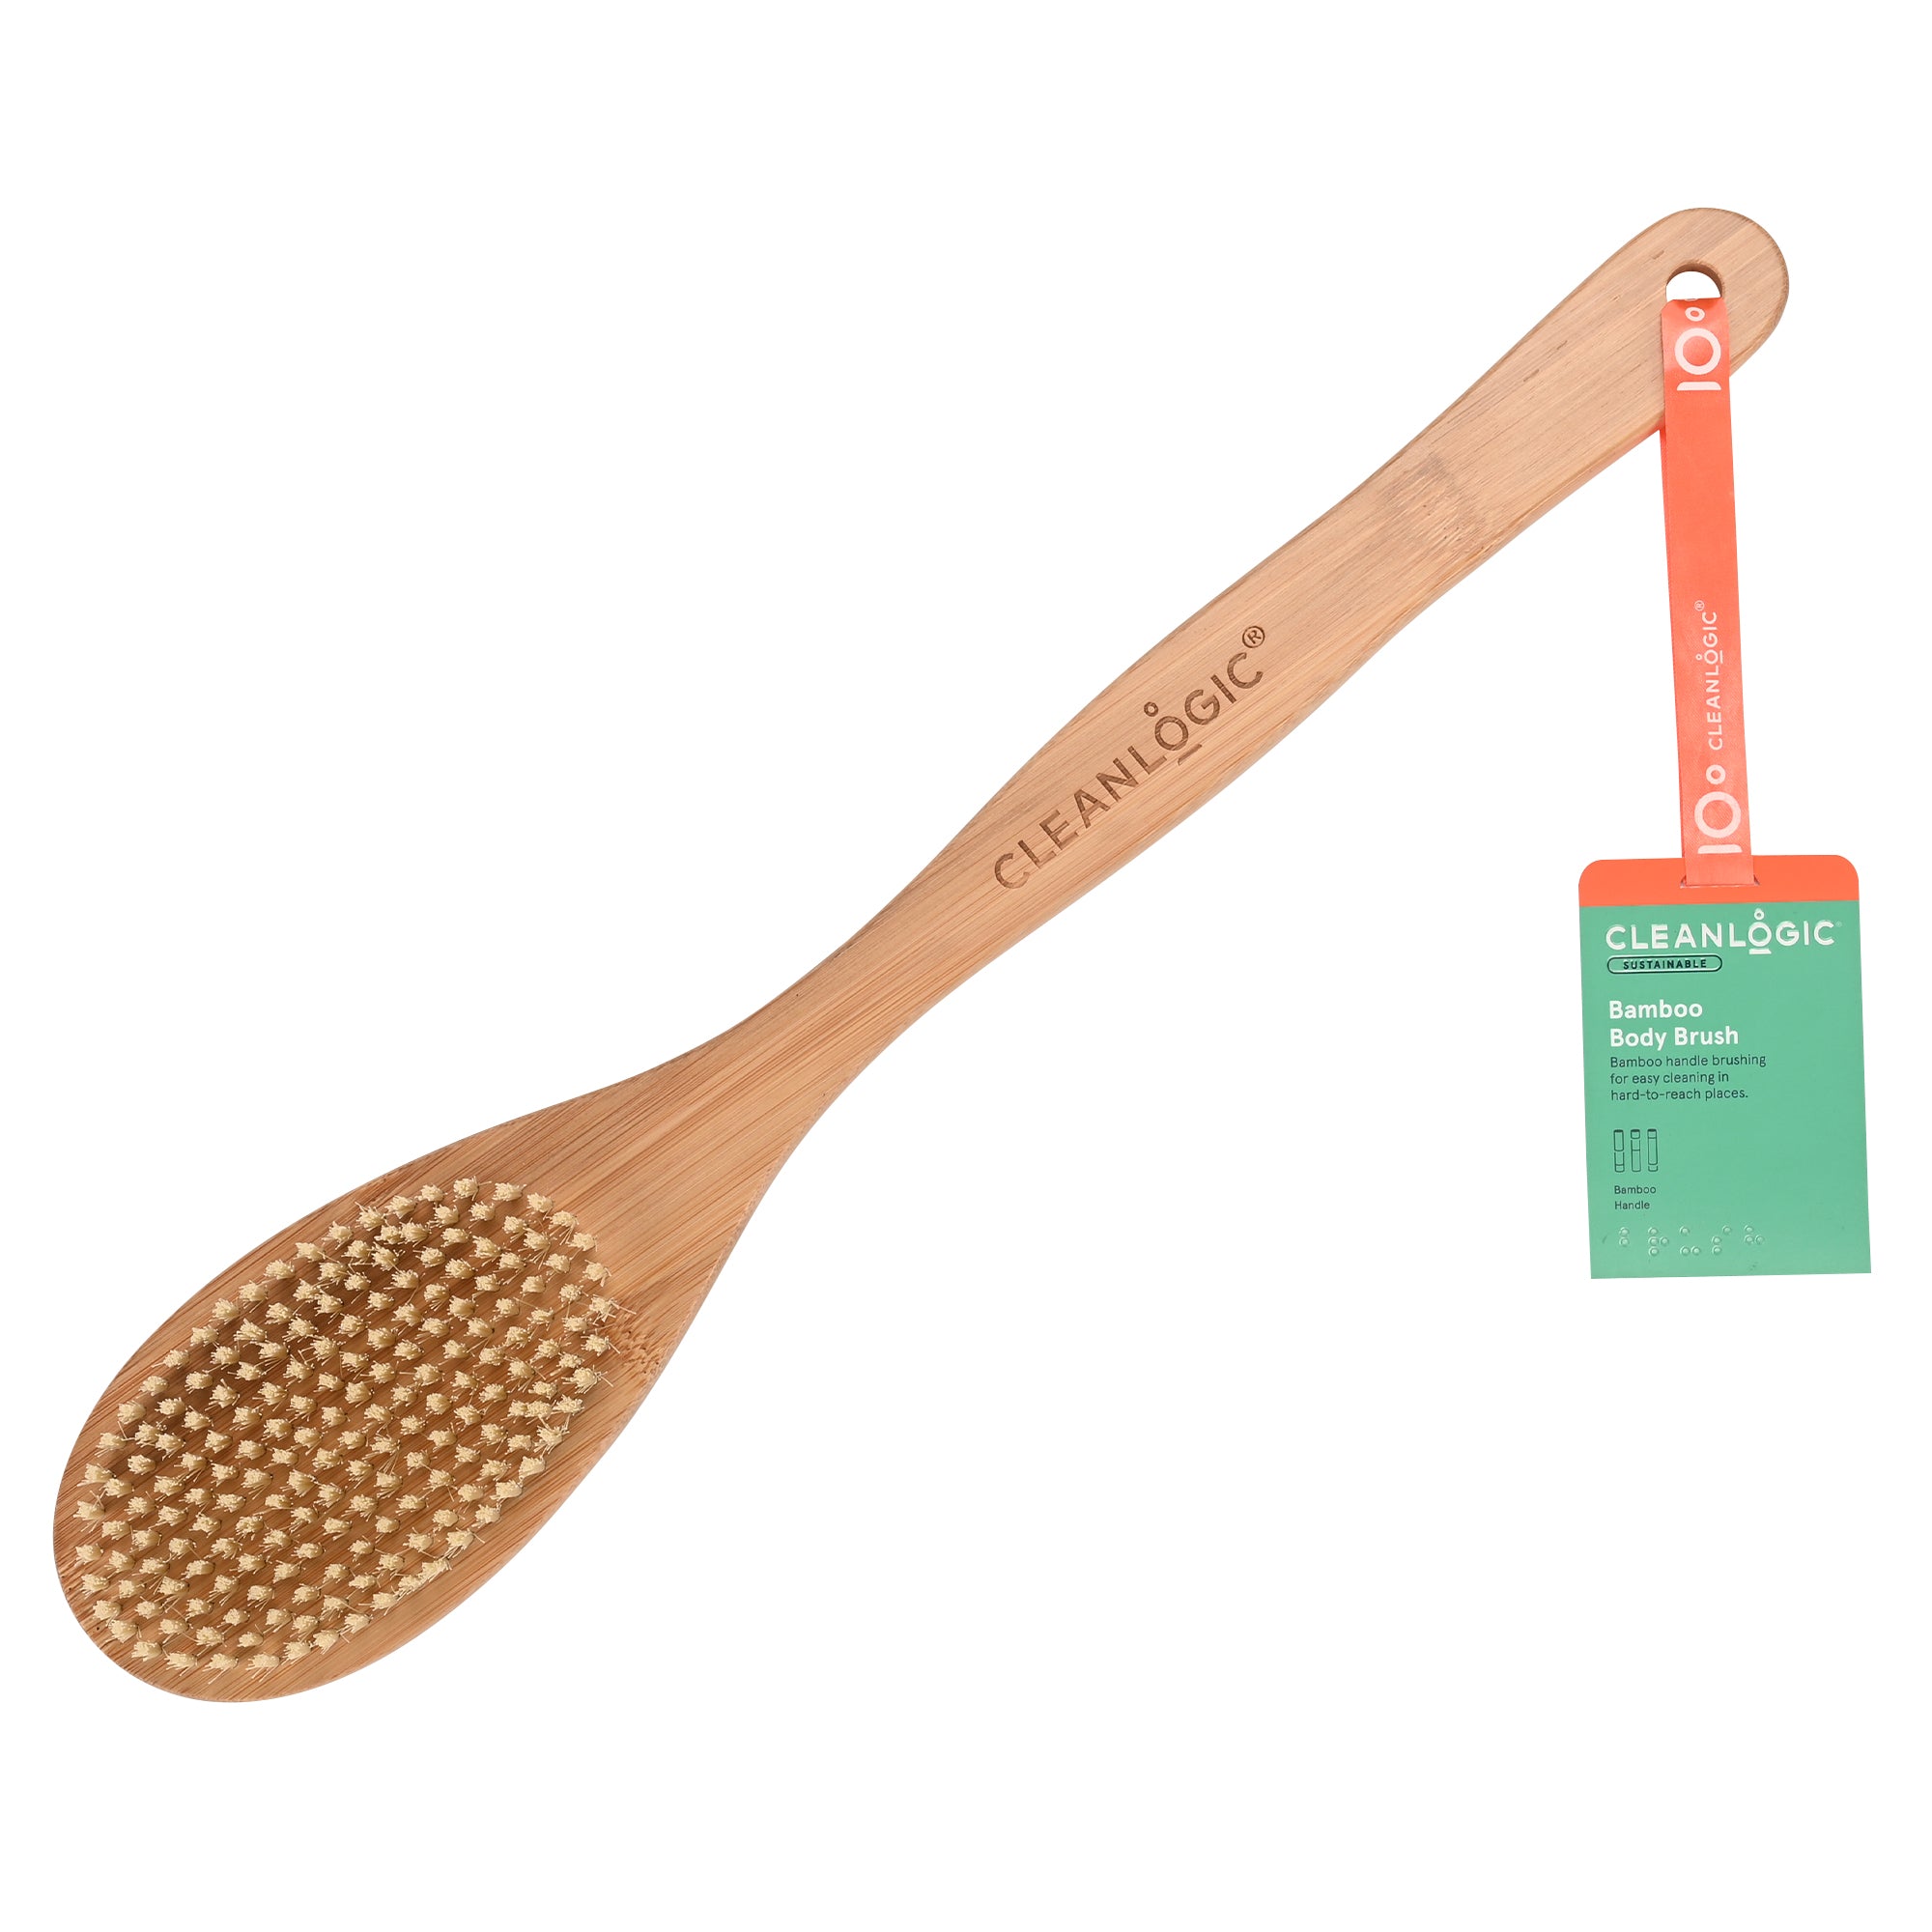 Cleanlogic Sustainable Bamboo Body Brush